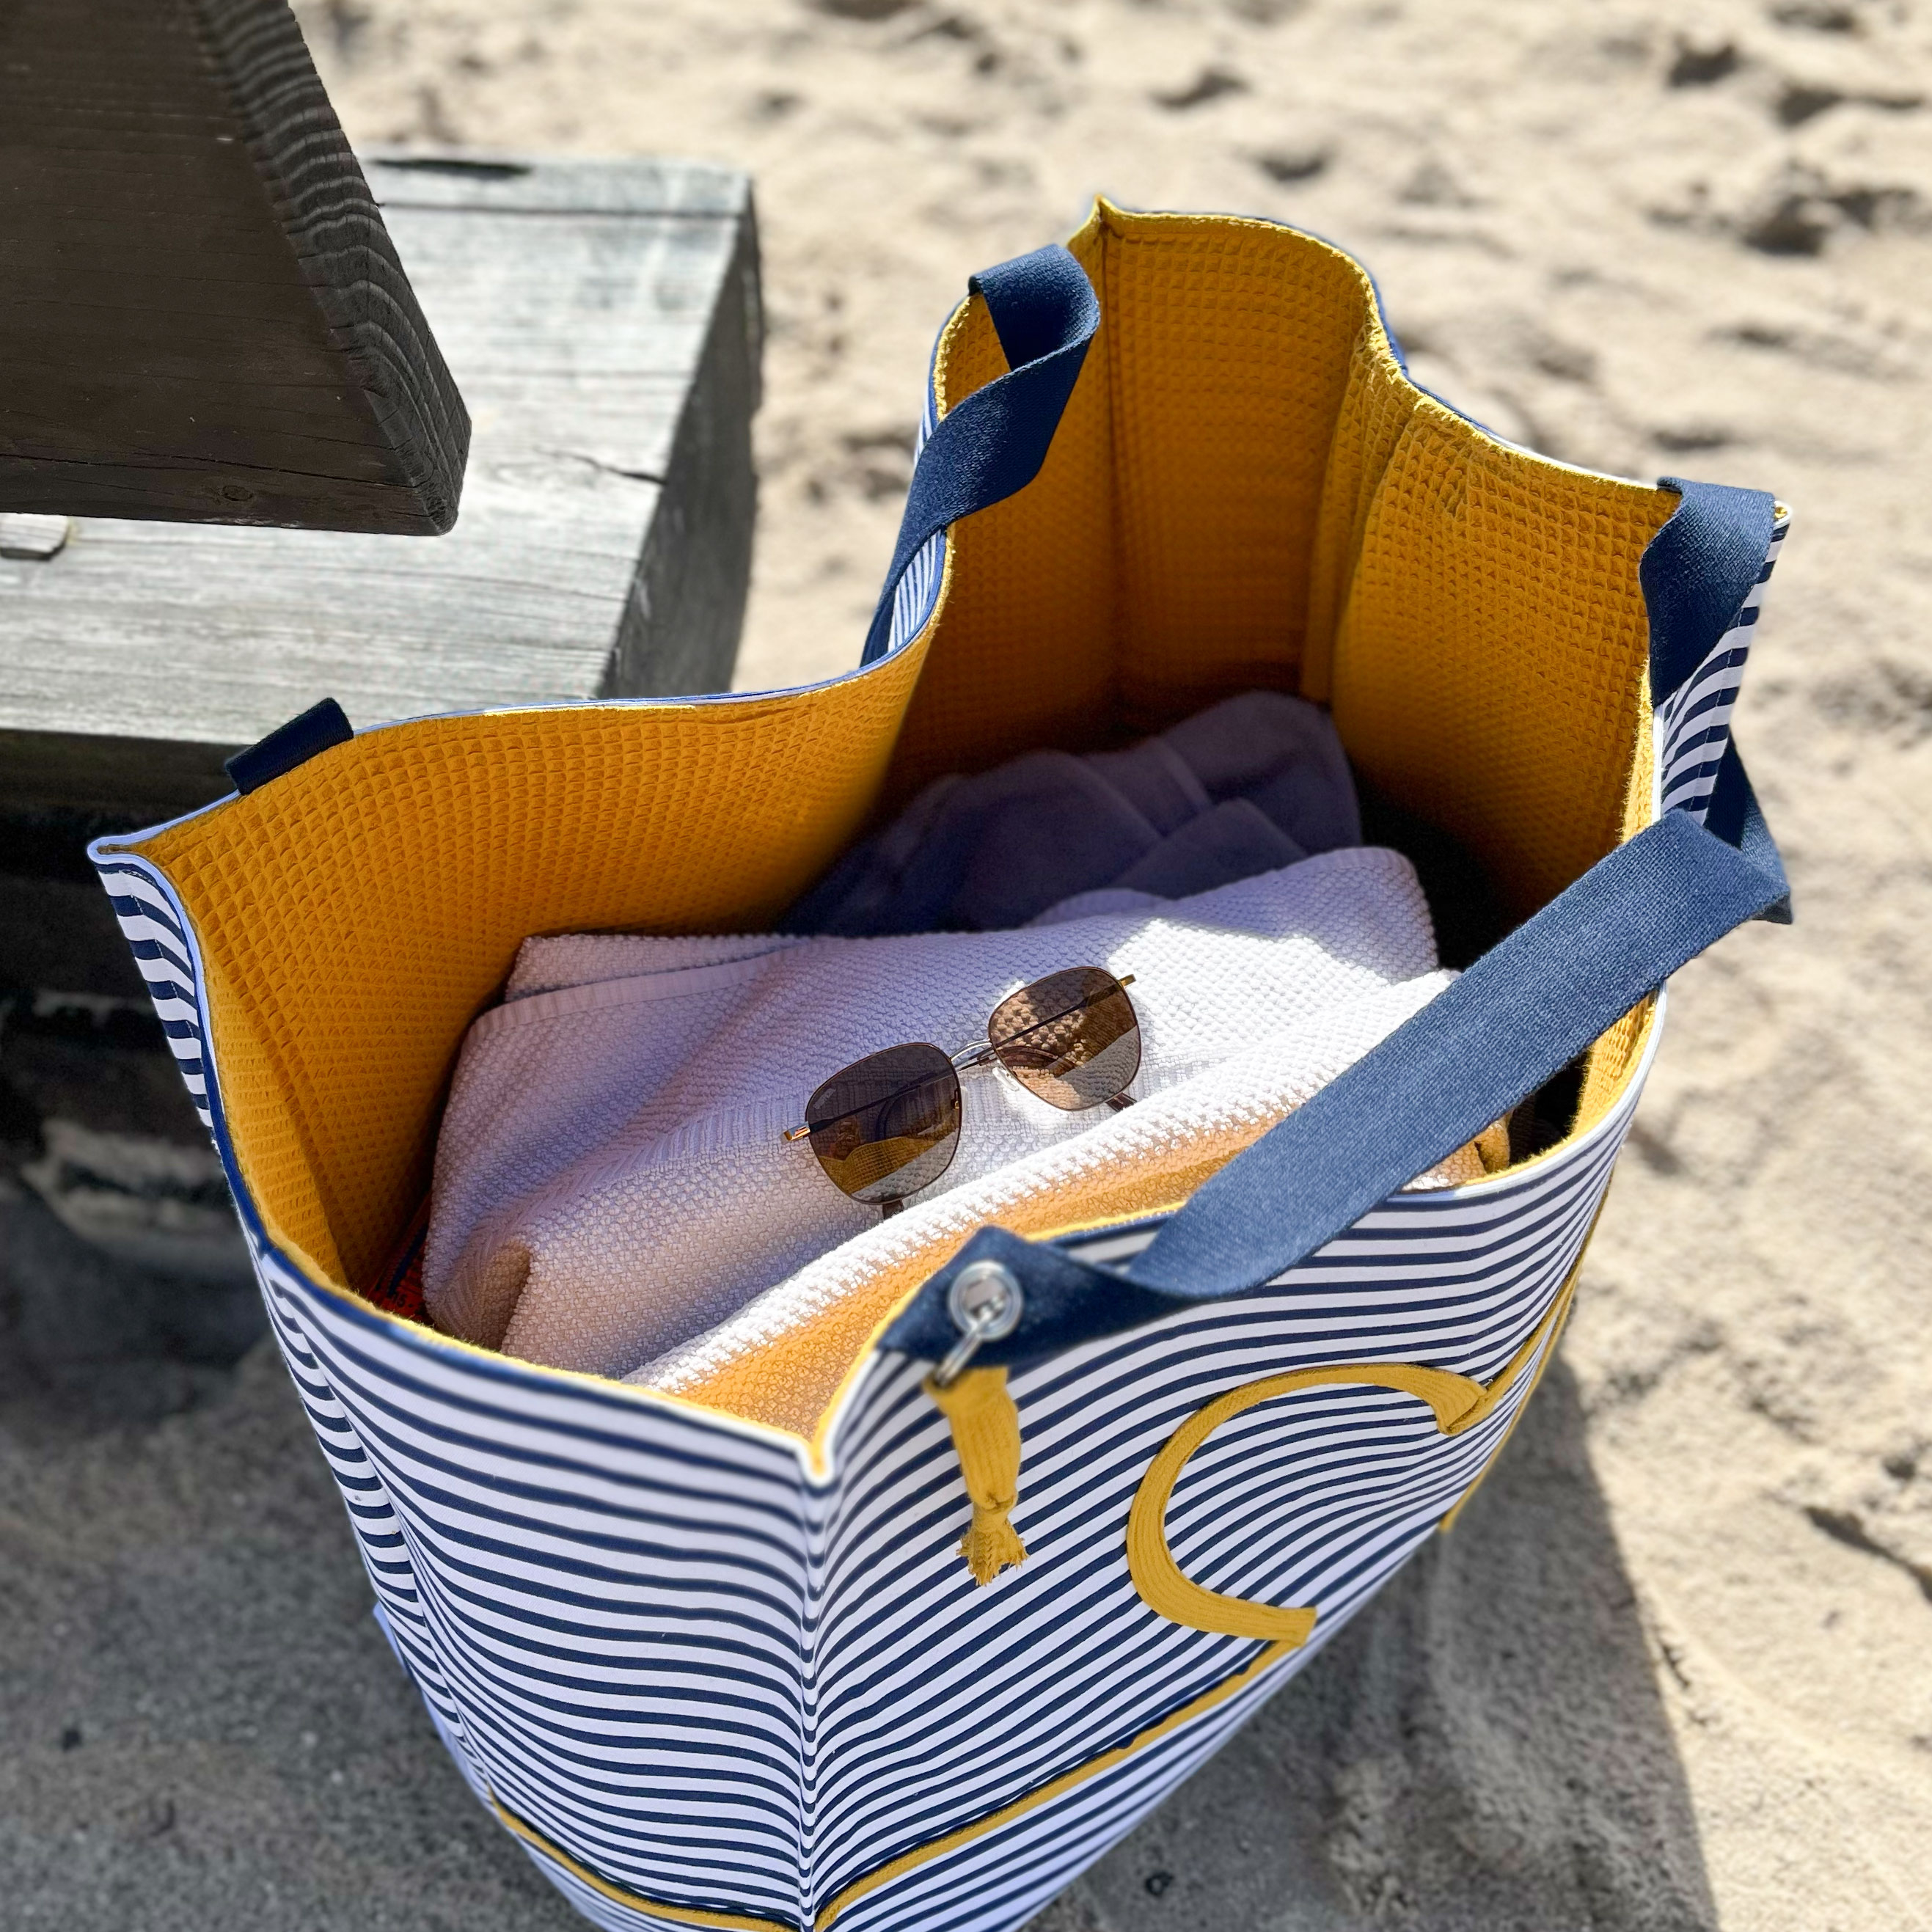 Tutoriel pour coudre un sac de plage en tissu éponge - Marie Claire